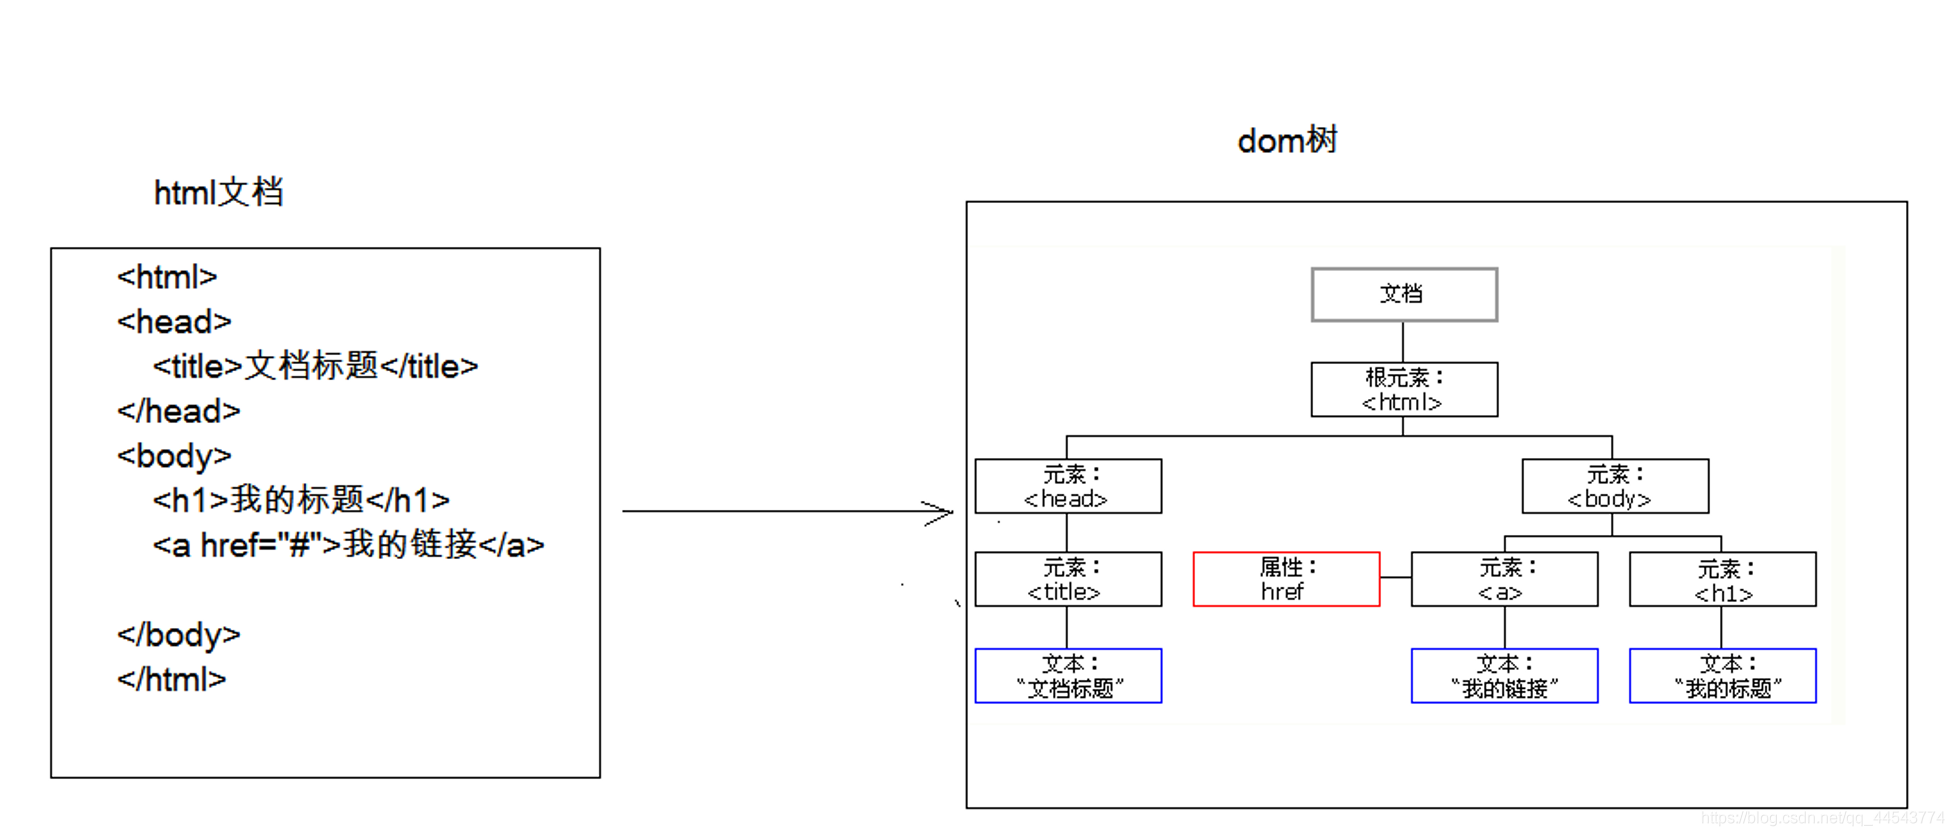 图解DOM树（最简单的方式理解DOM树）_是木子啦~的博客-CSDN博客